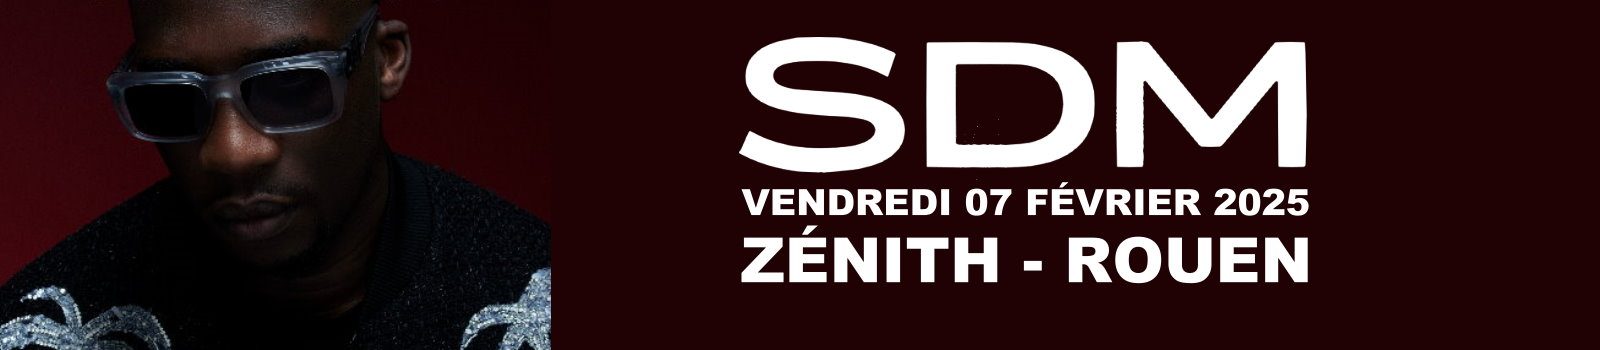 Bandeau SDM Rouen 2025 1600x350